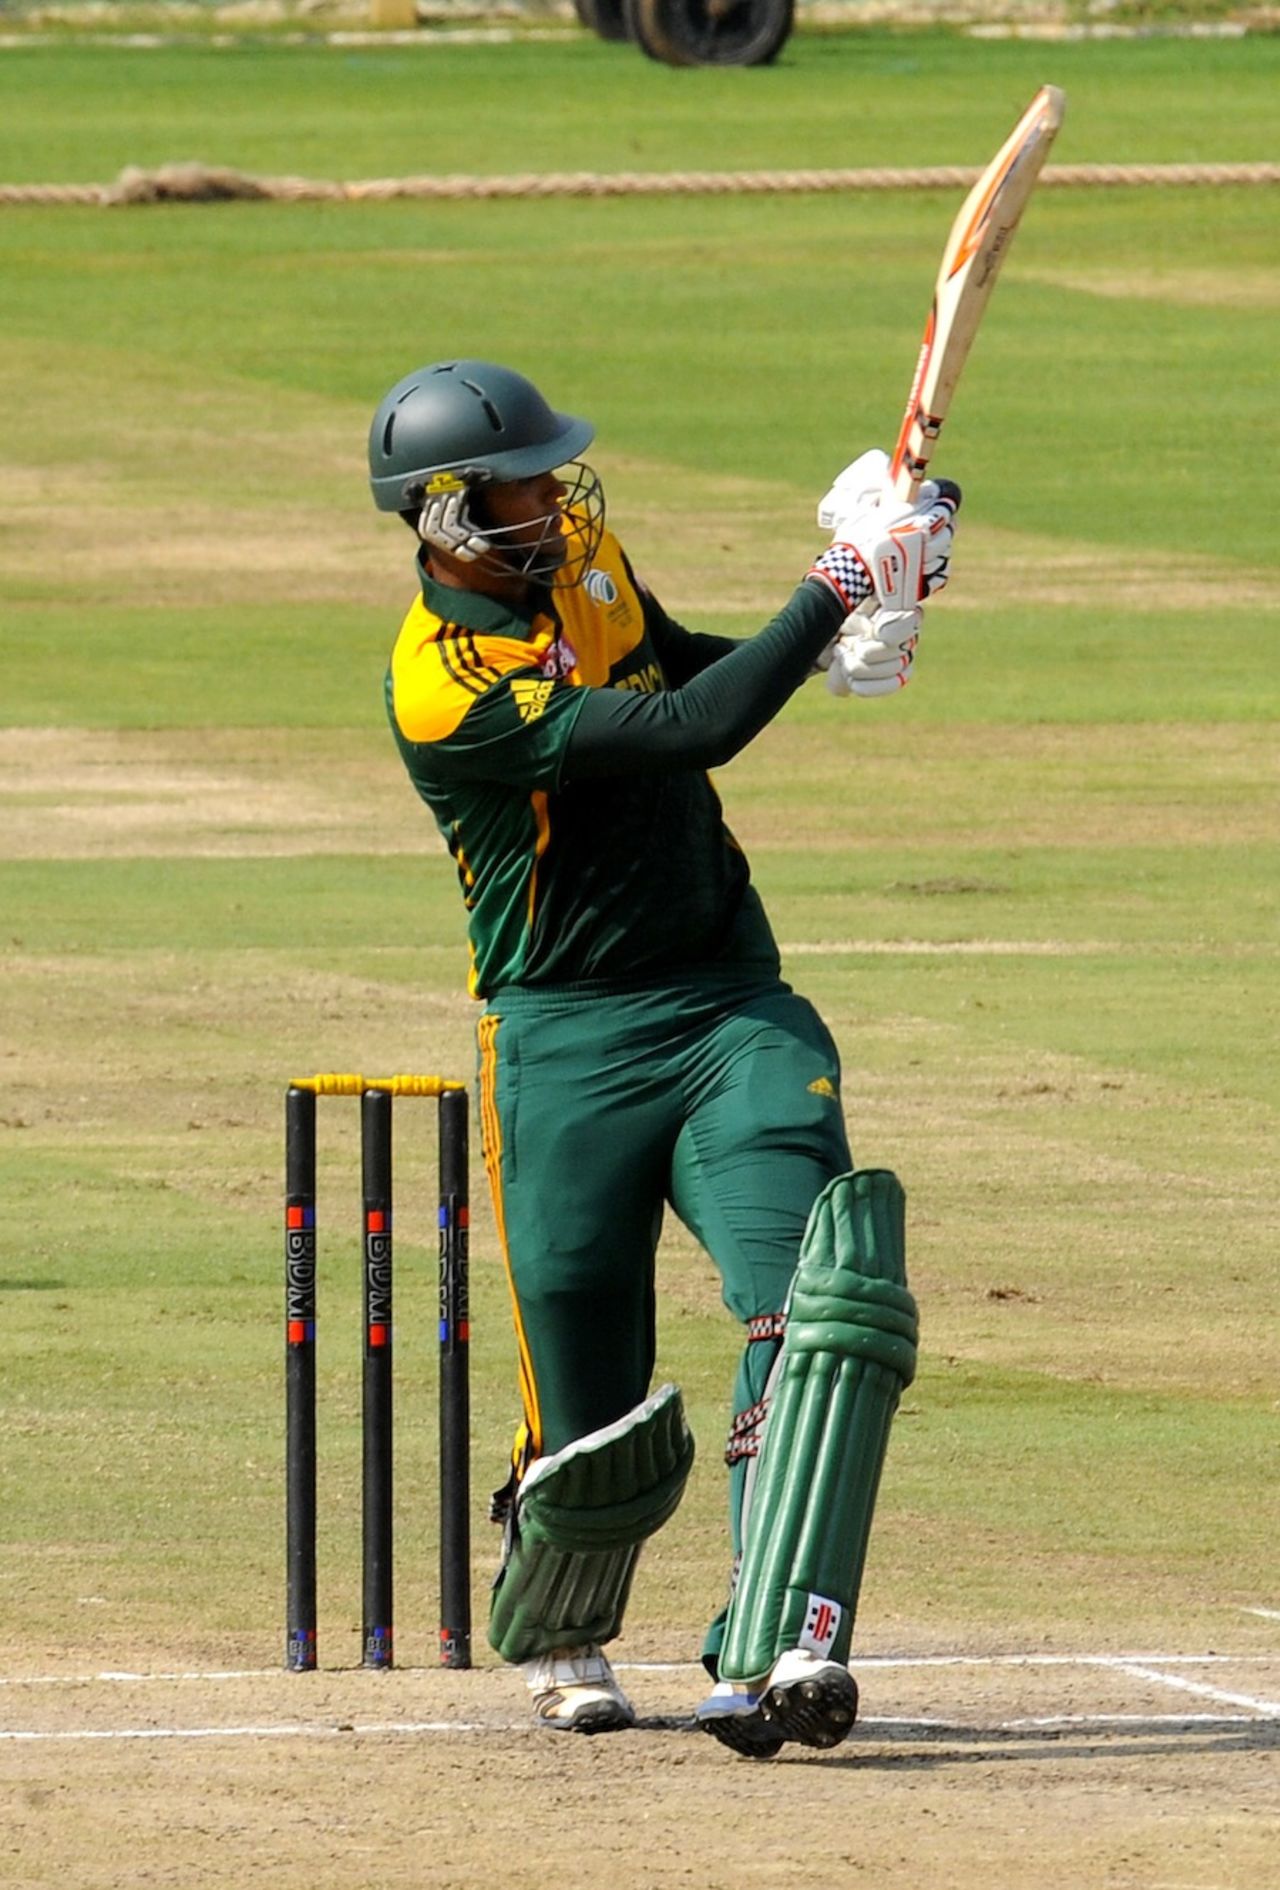 Jason Smith scored an unbeaten 41, Australia Under-19s v South Africa Under-19s, Visakhapatnam, September 29, 2013